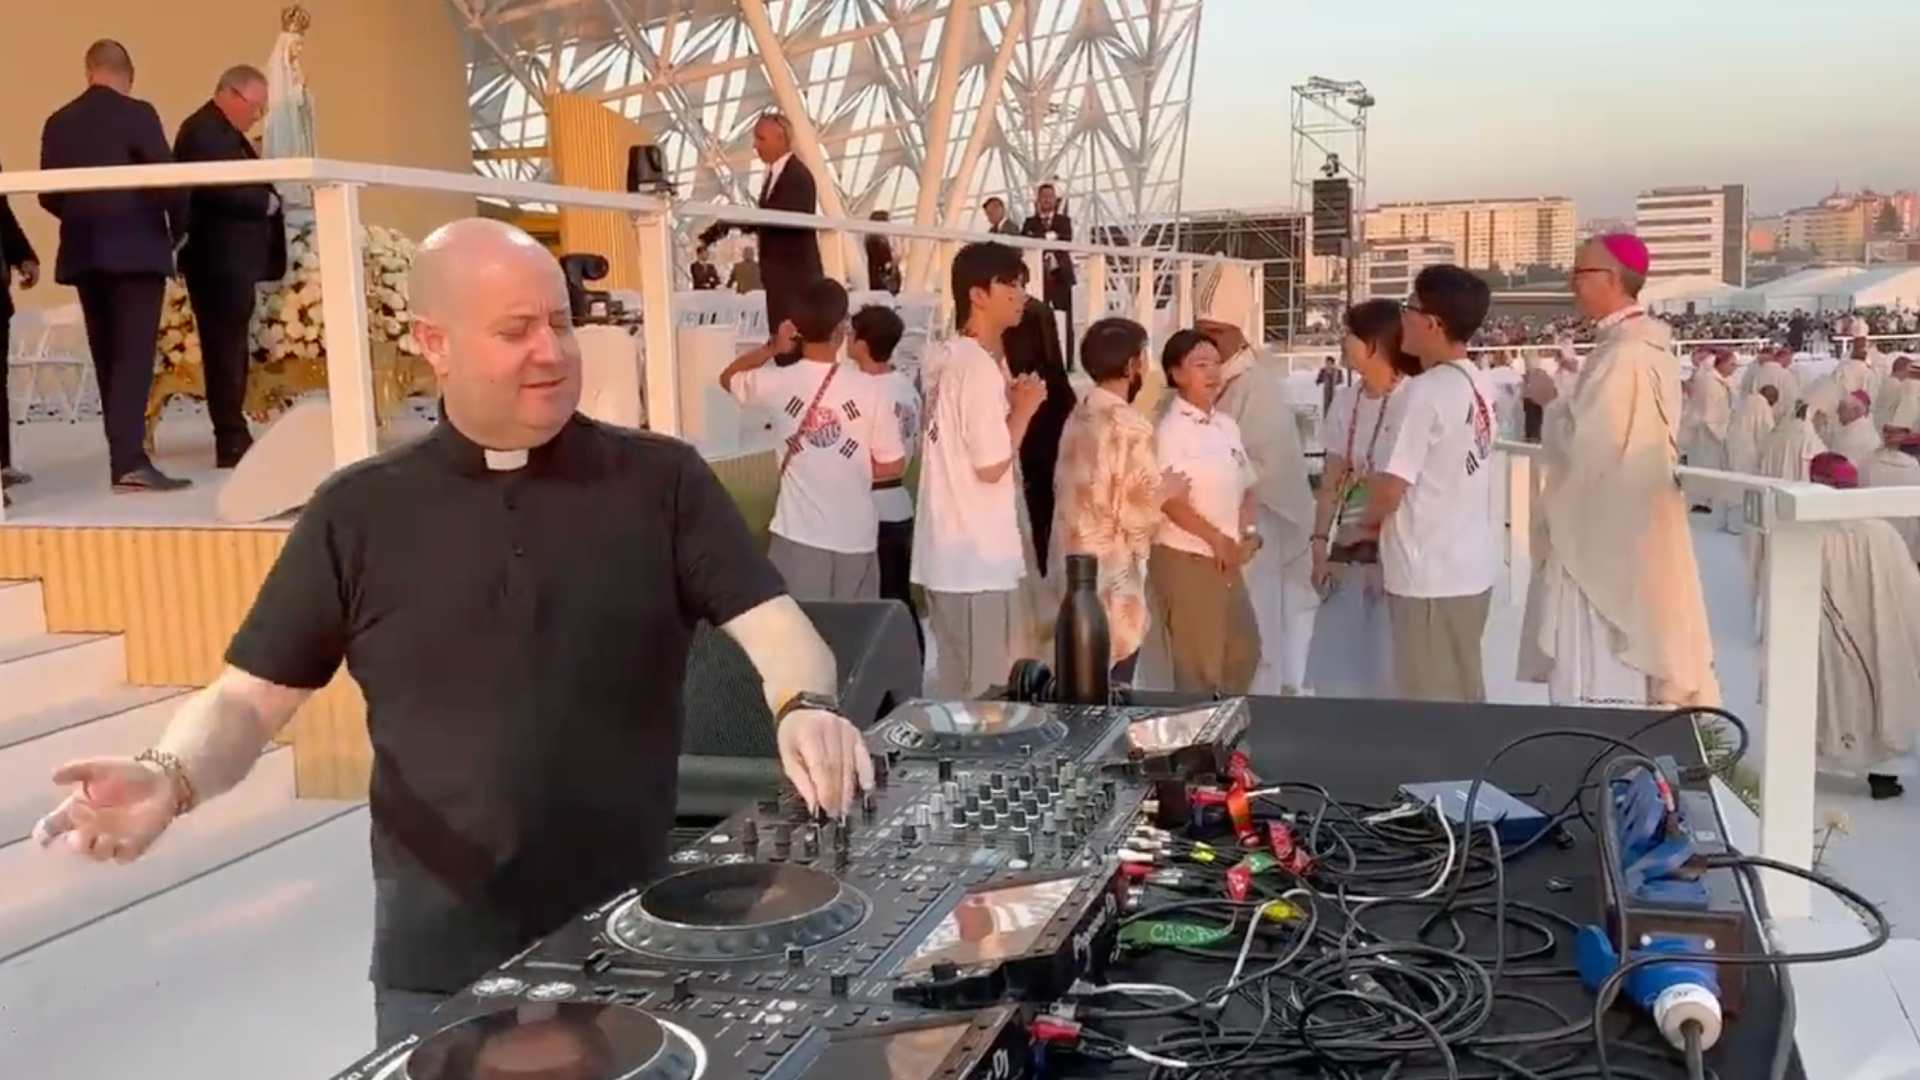 Captan a un sacerdote con dotes de DJ